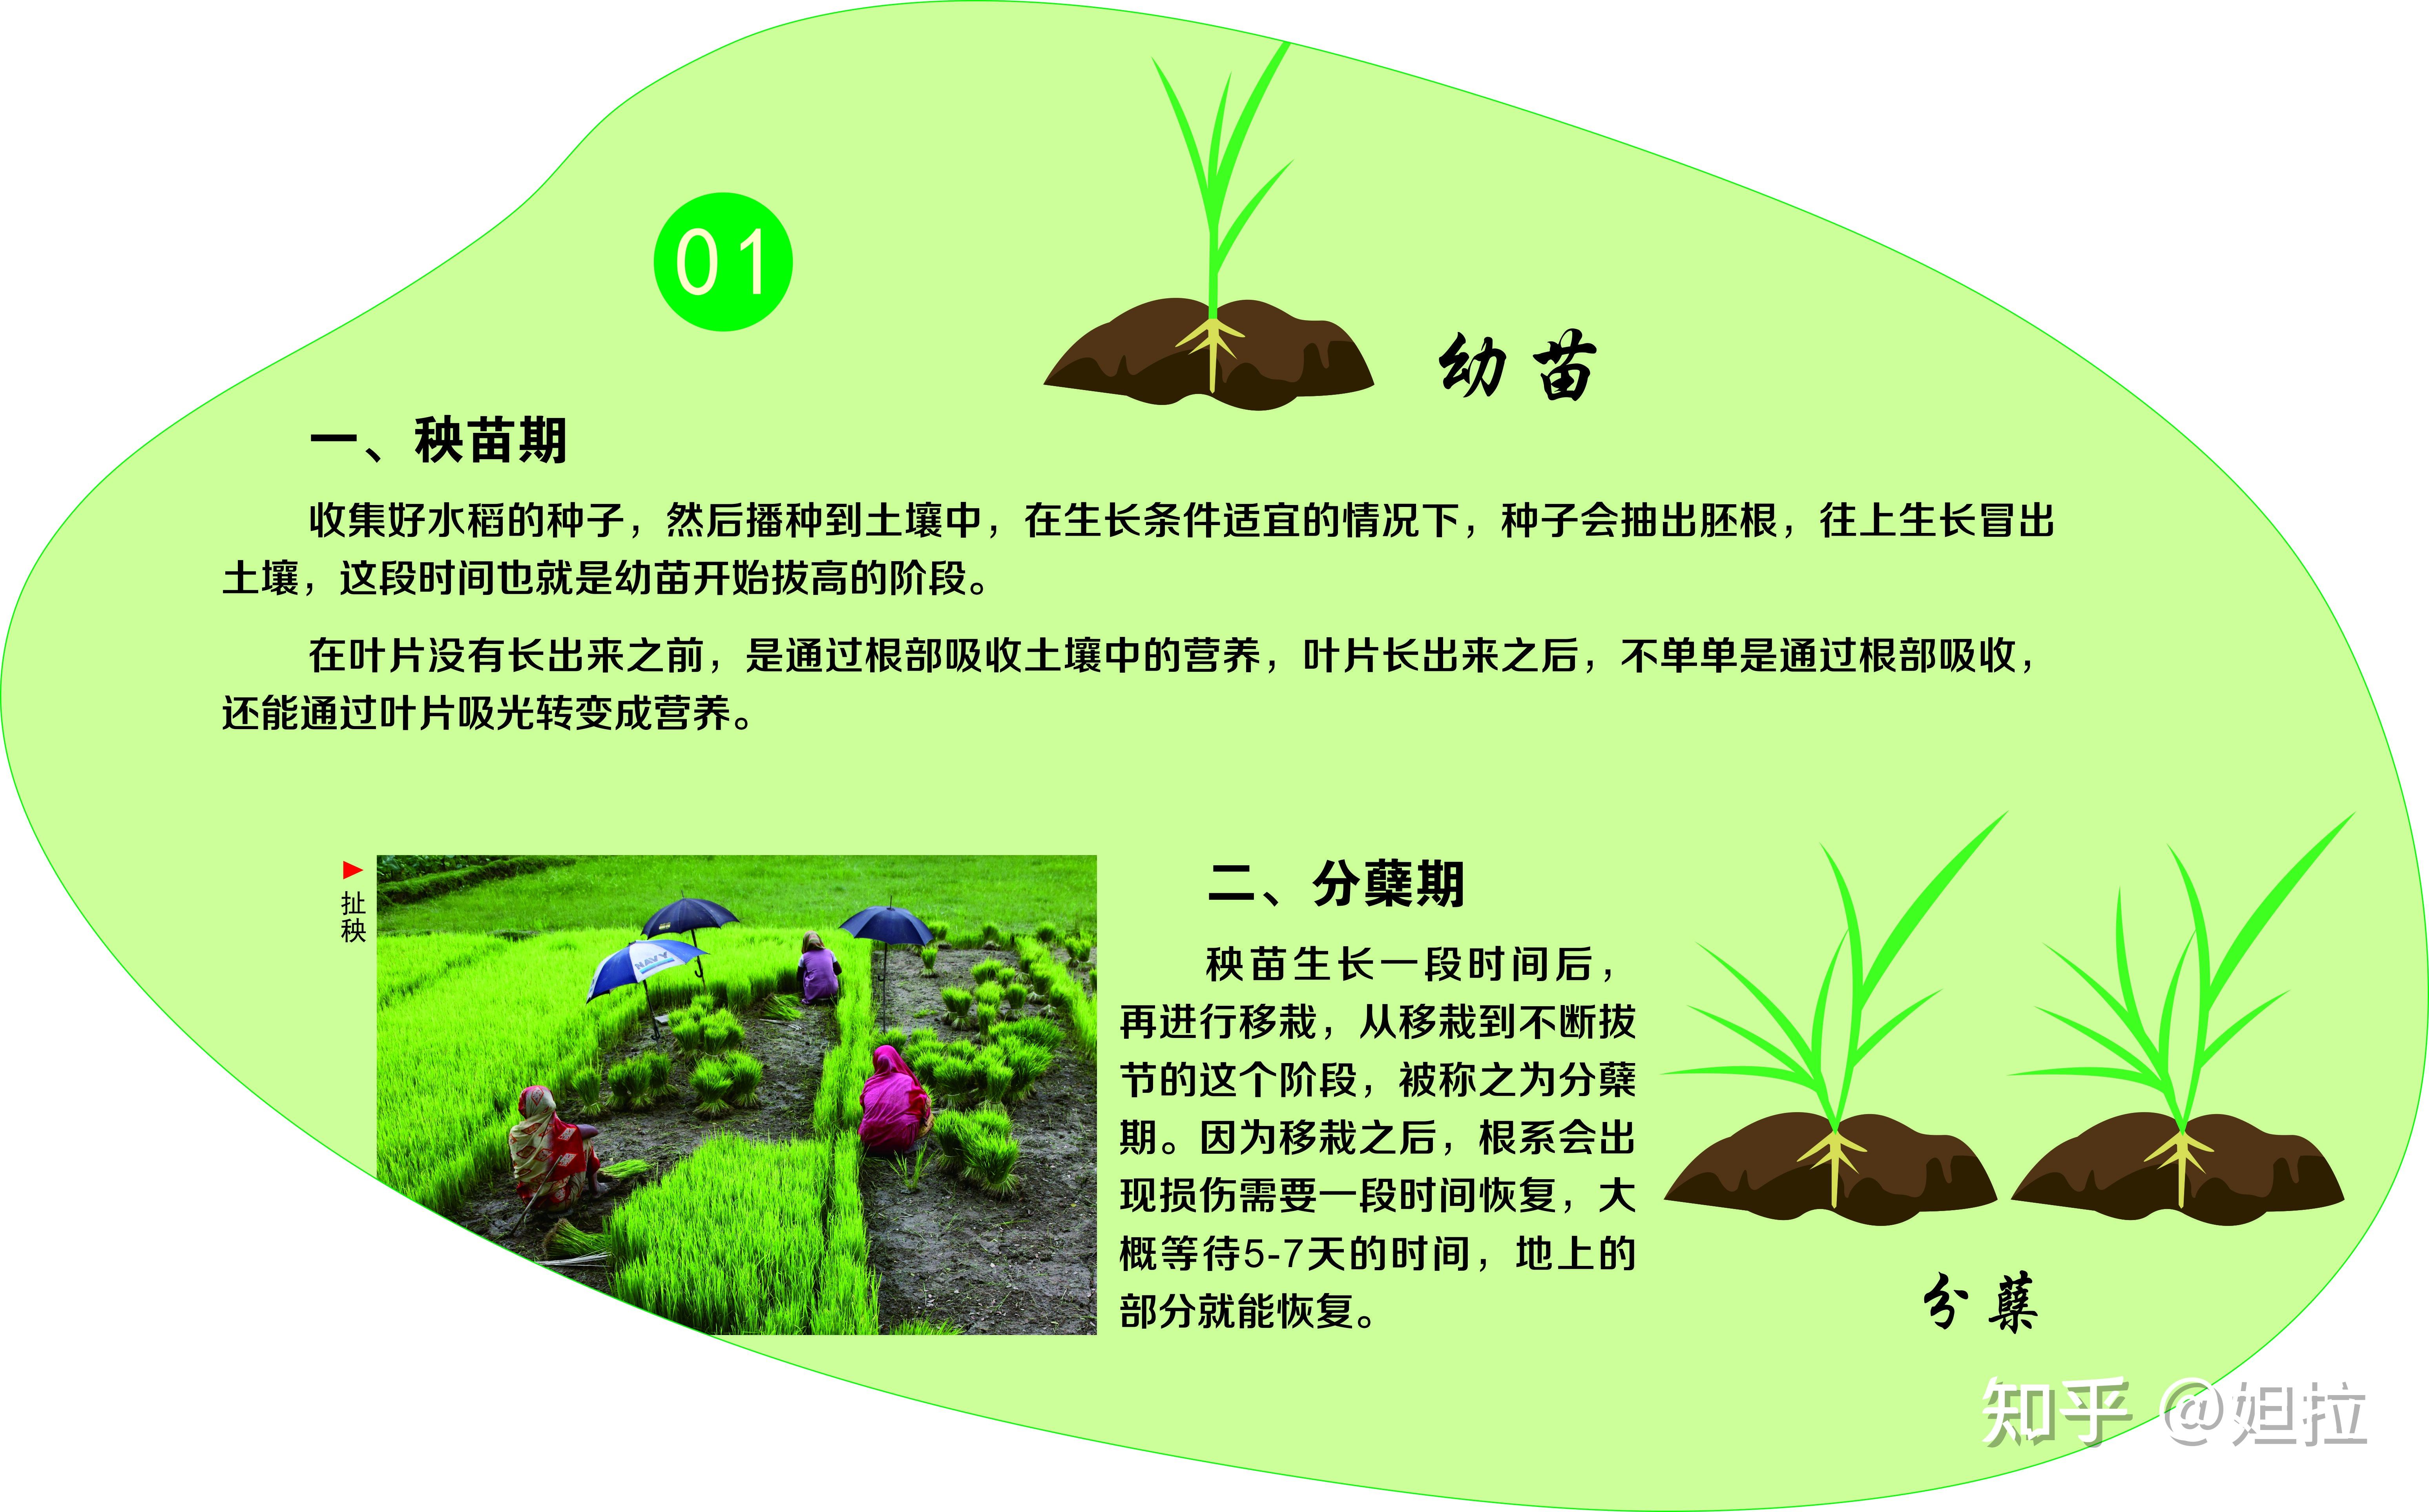 序水稻从种子萌发开始,经过发根,长叶,分骧,拔节,长穗,开花,结实等一